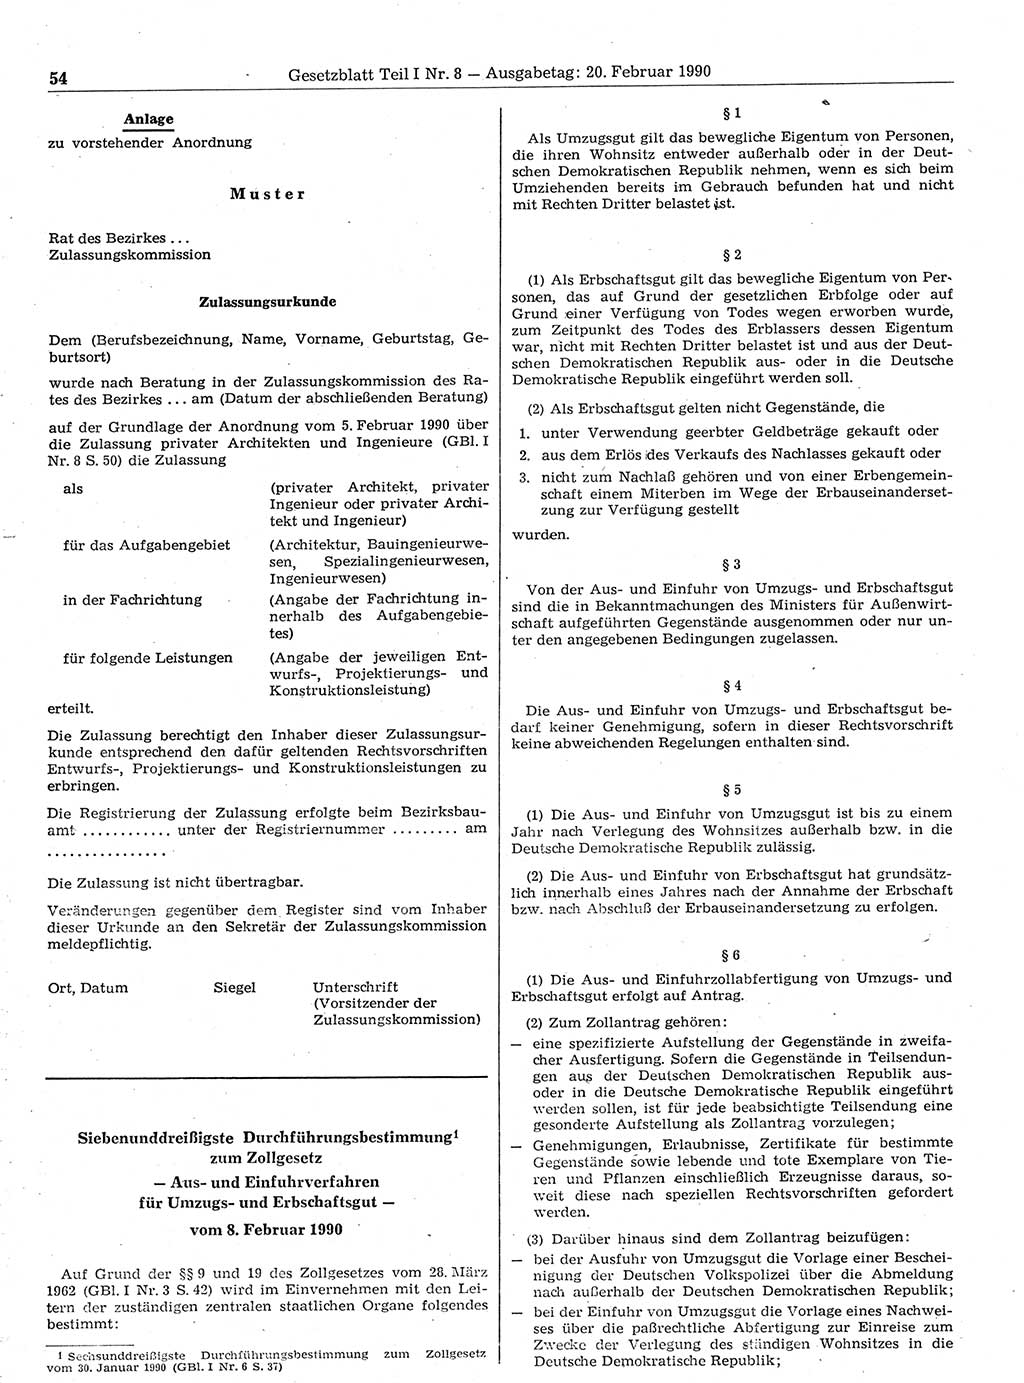 Gesetzblatt (GBl.) der Deutschen Demokratischen Republik (DDR) Teil Ⅰ 1990, Seite 54 (GBl. DDR Ⅰ 1990, S. 54)